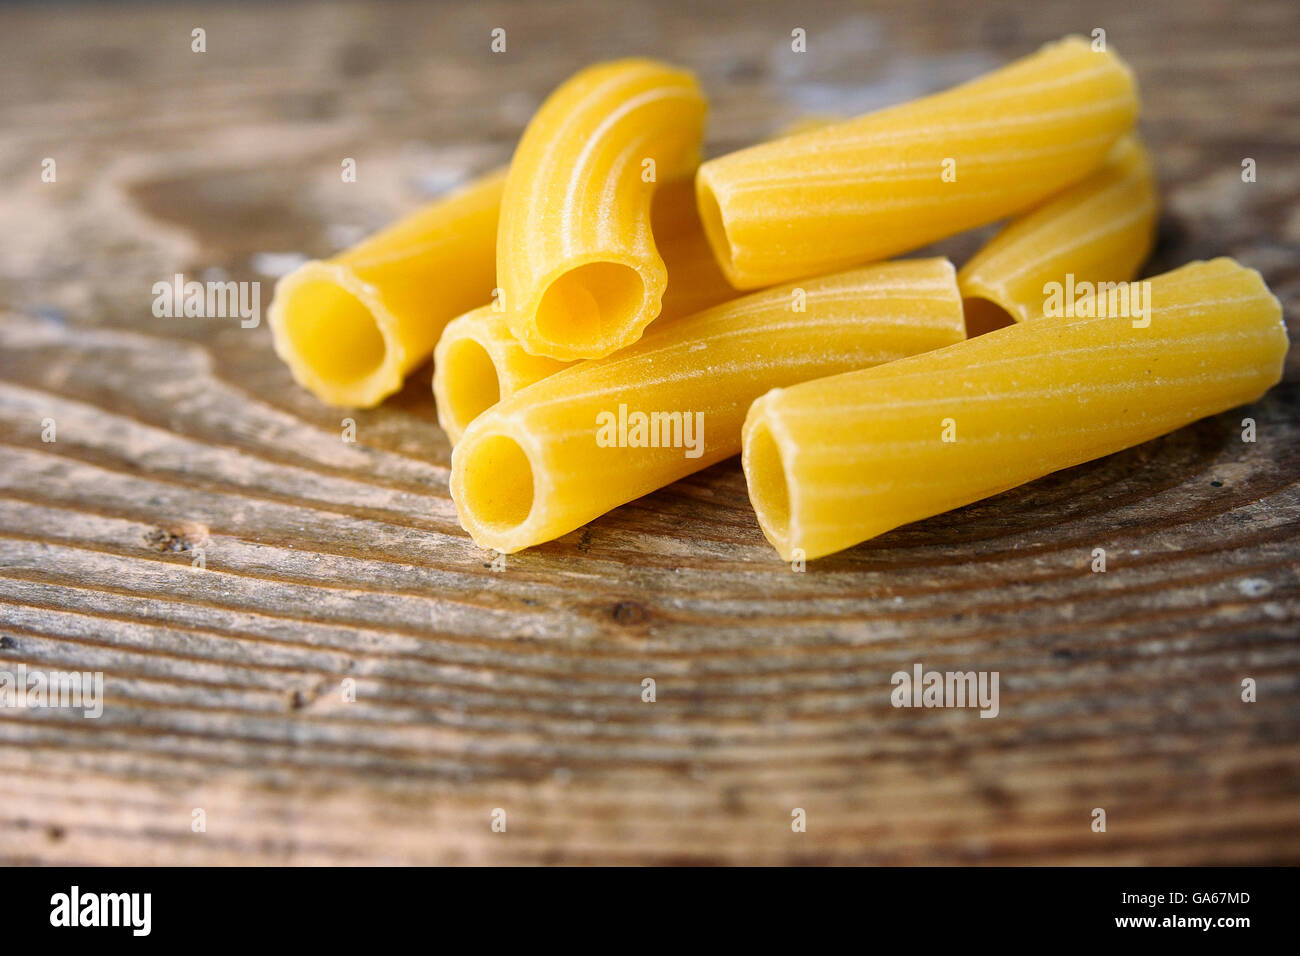 Rigatoni: italian short ridged pasta. Stock Photo